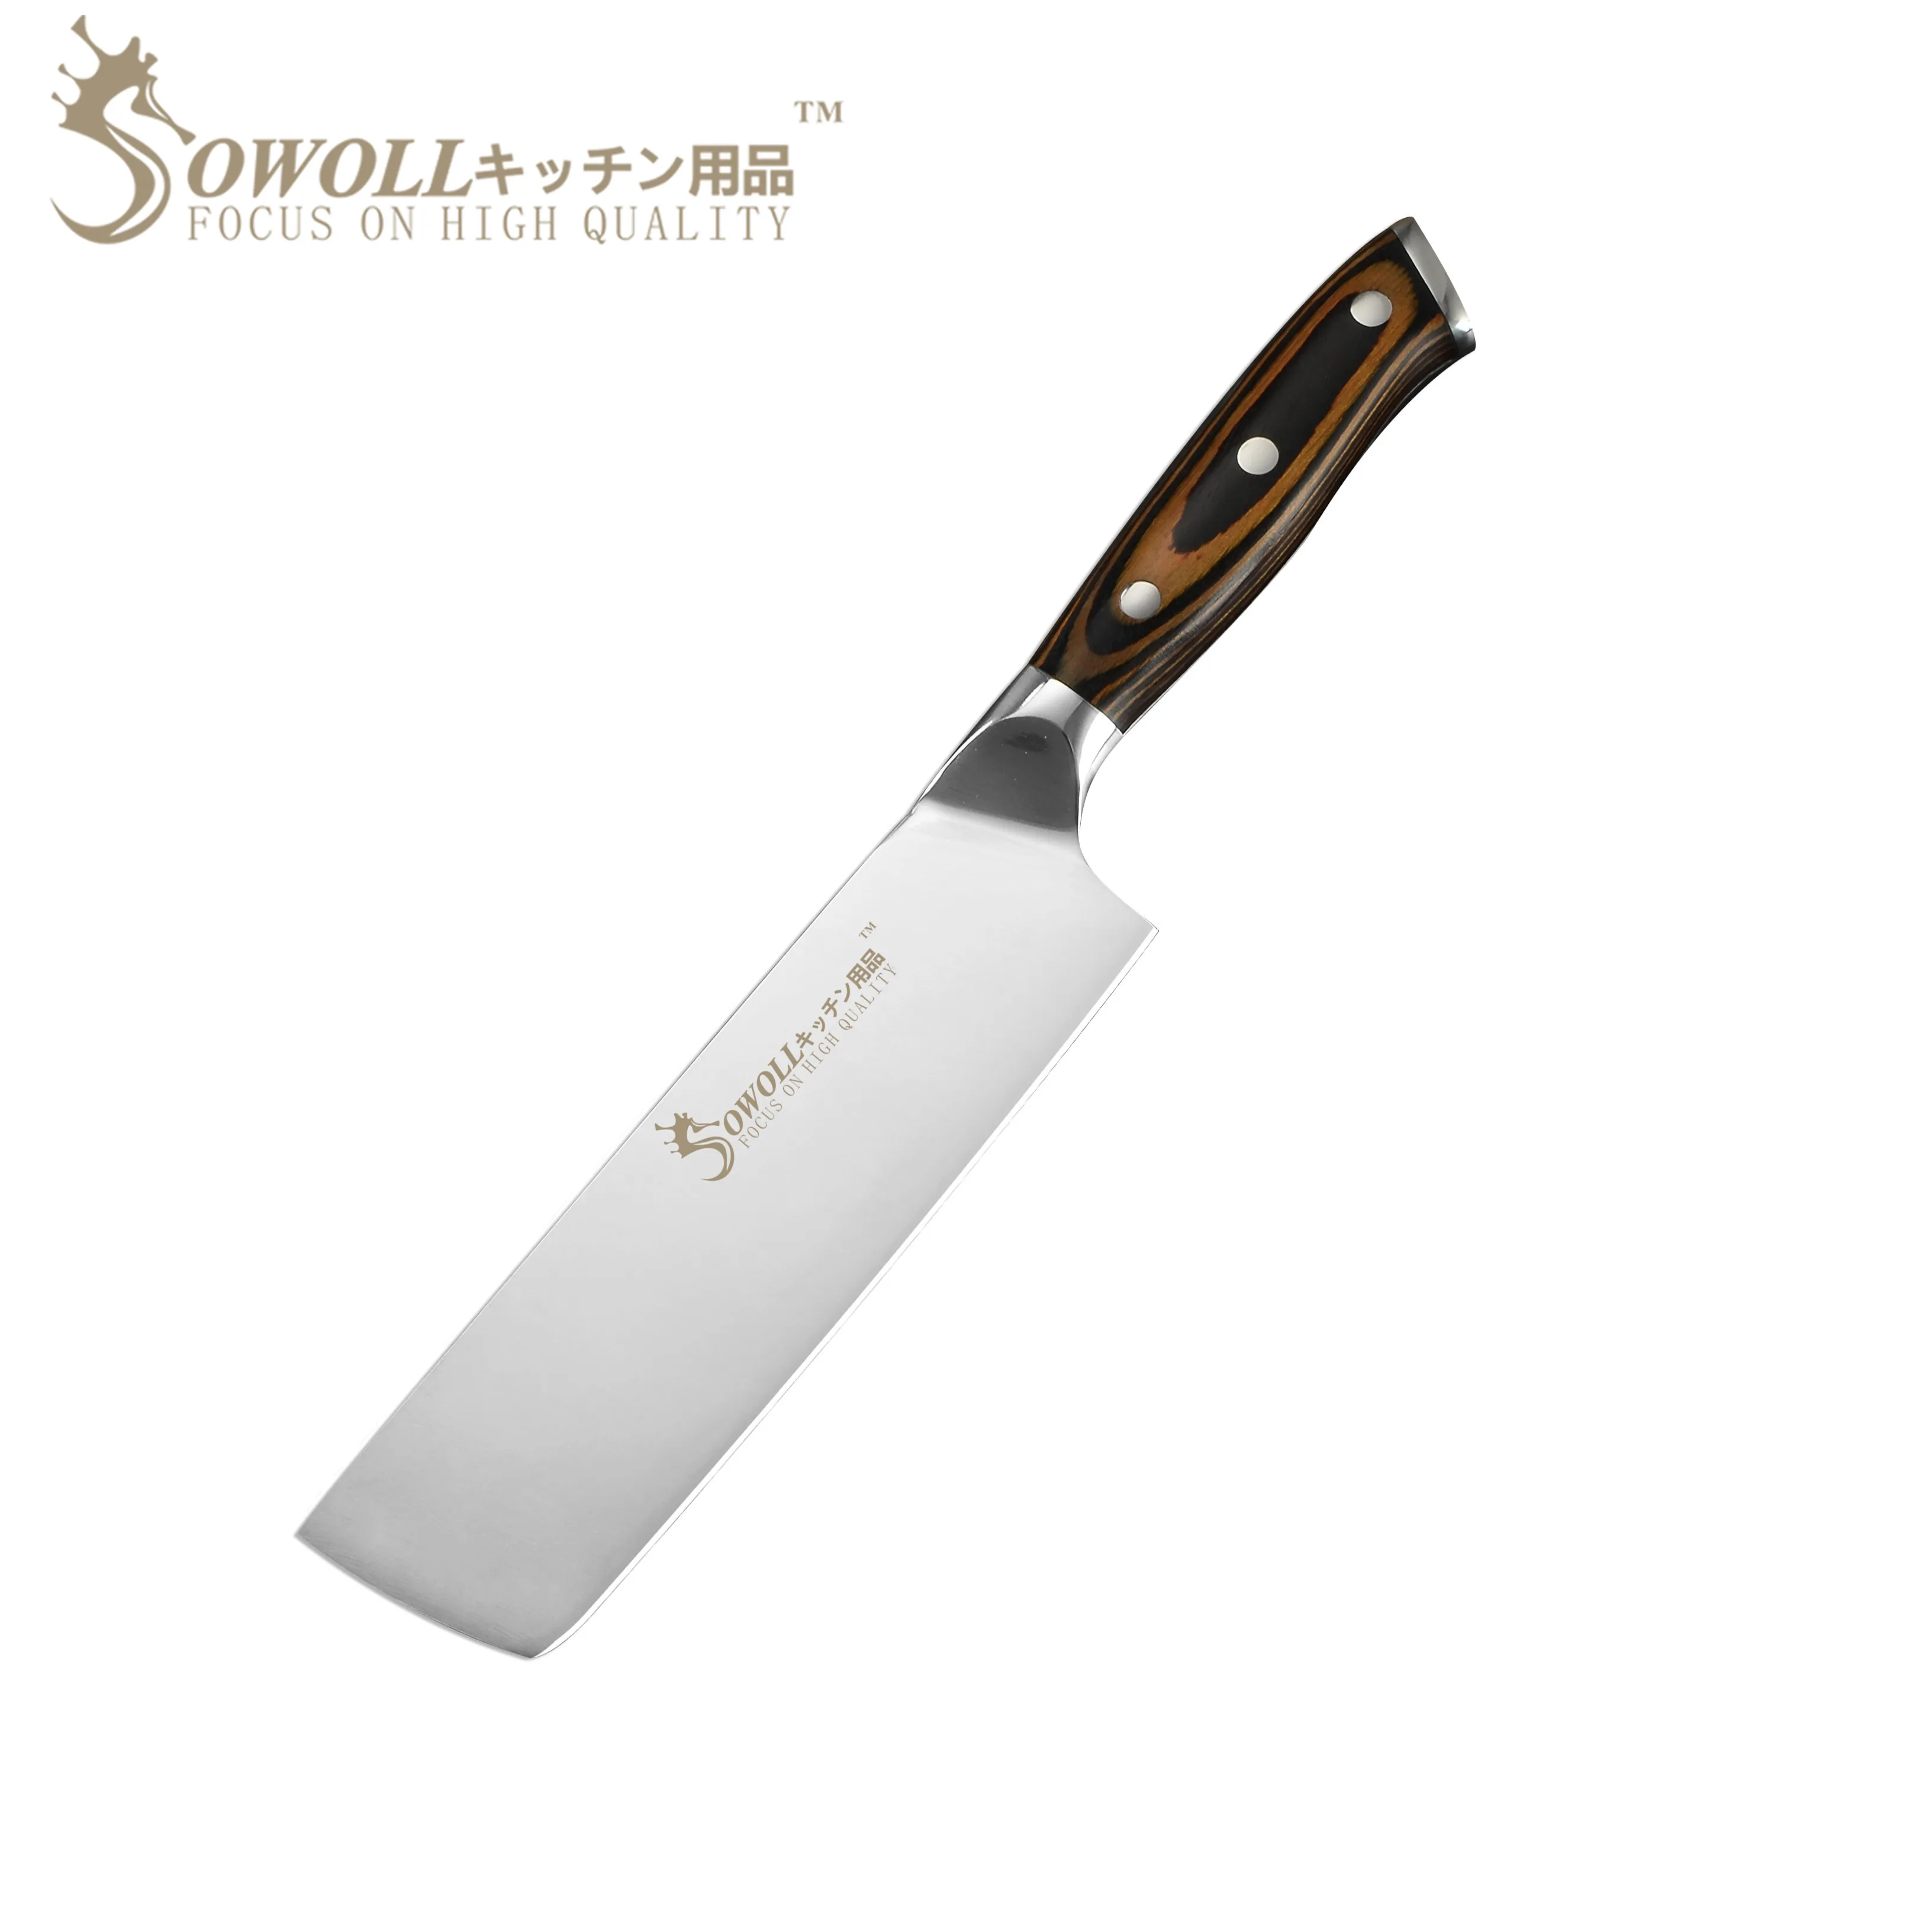 Sowoll Полный Тан японский кухонный нож Pakka Деревянная Ручка Nakiri японский шеф-повар 7 дюймов нержавеющая сталь овощной нож для резки